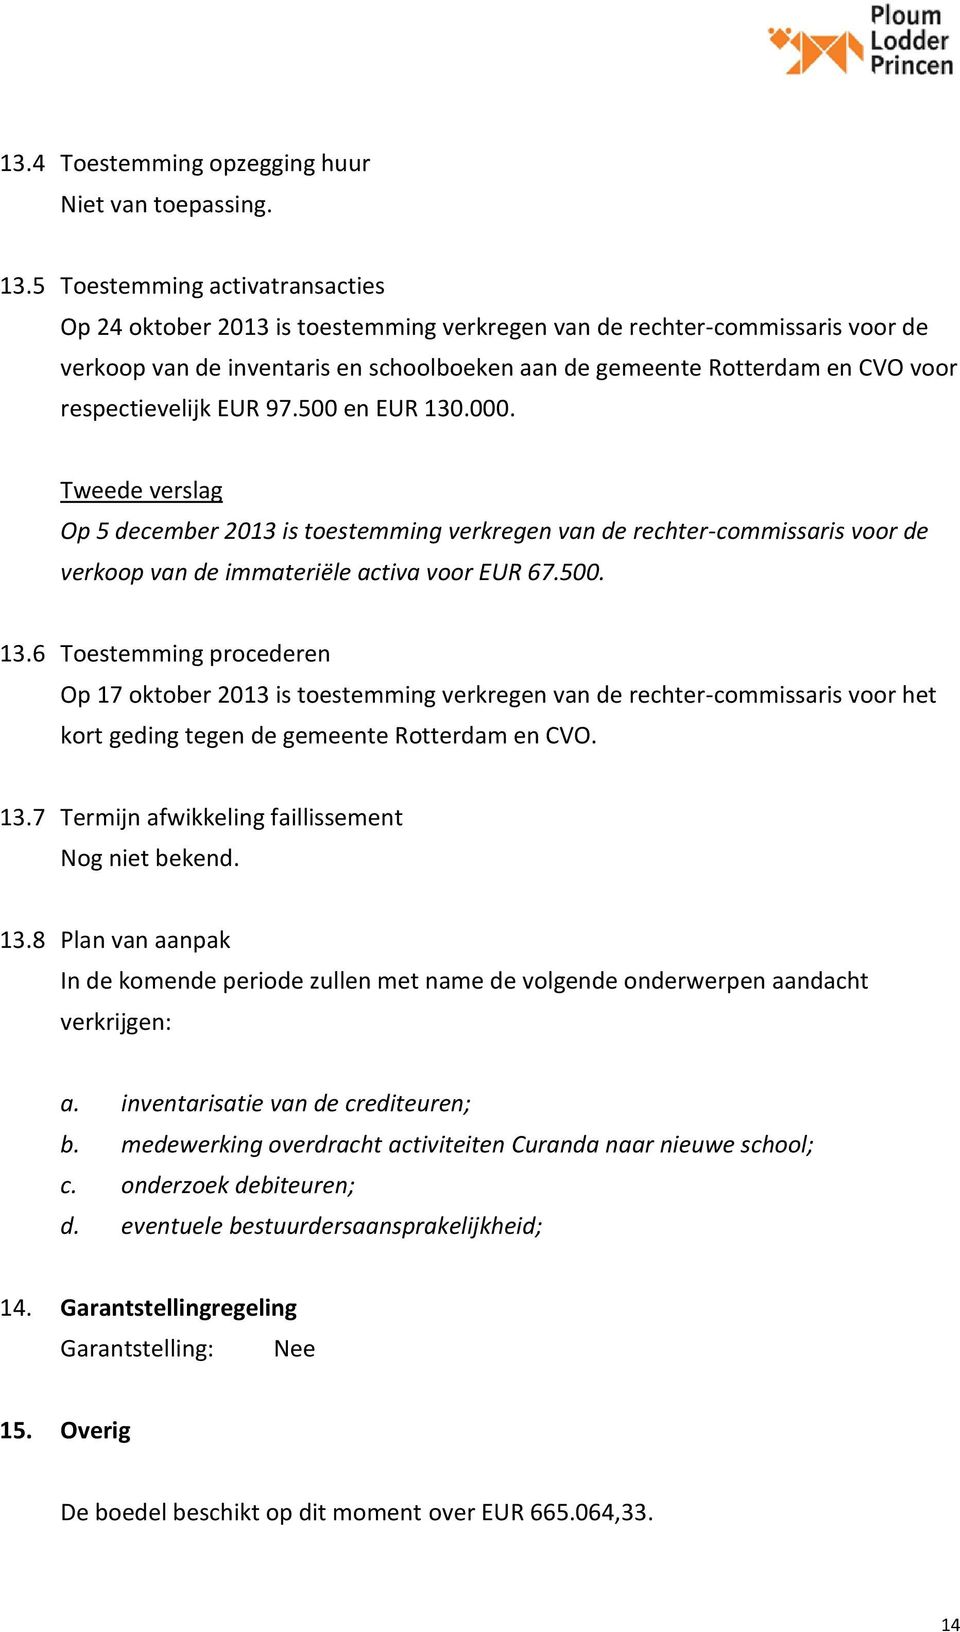 respectievelijk EUR 97.500 en EUR 130.000. Op 5 december 2013 is toestemming verkregen van de rechter-commissaris voor de verkoop van de immateriële activa voor EUR 67.500. 13.6 Toestemming procederen Op 17 oktober 2013 is toestemming verkregen van de rechter-commissaris voor het kort geding tegen de gemeente Rotterdam en CVO.